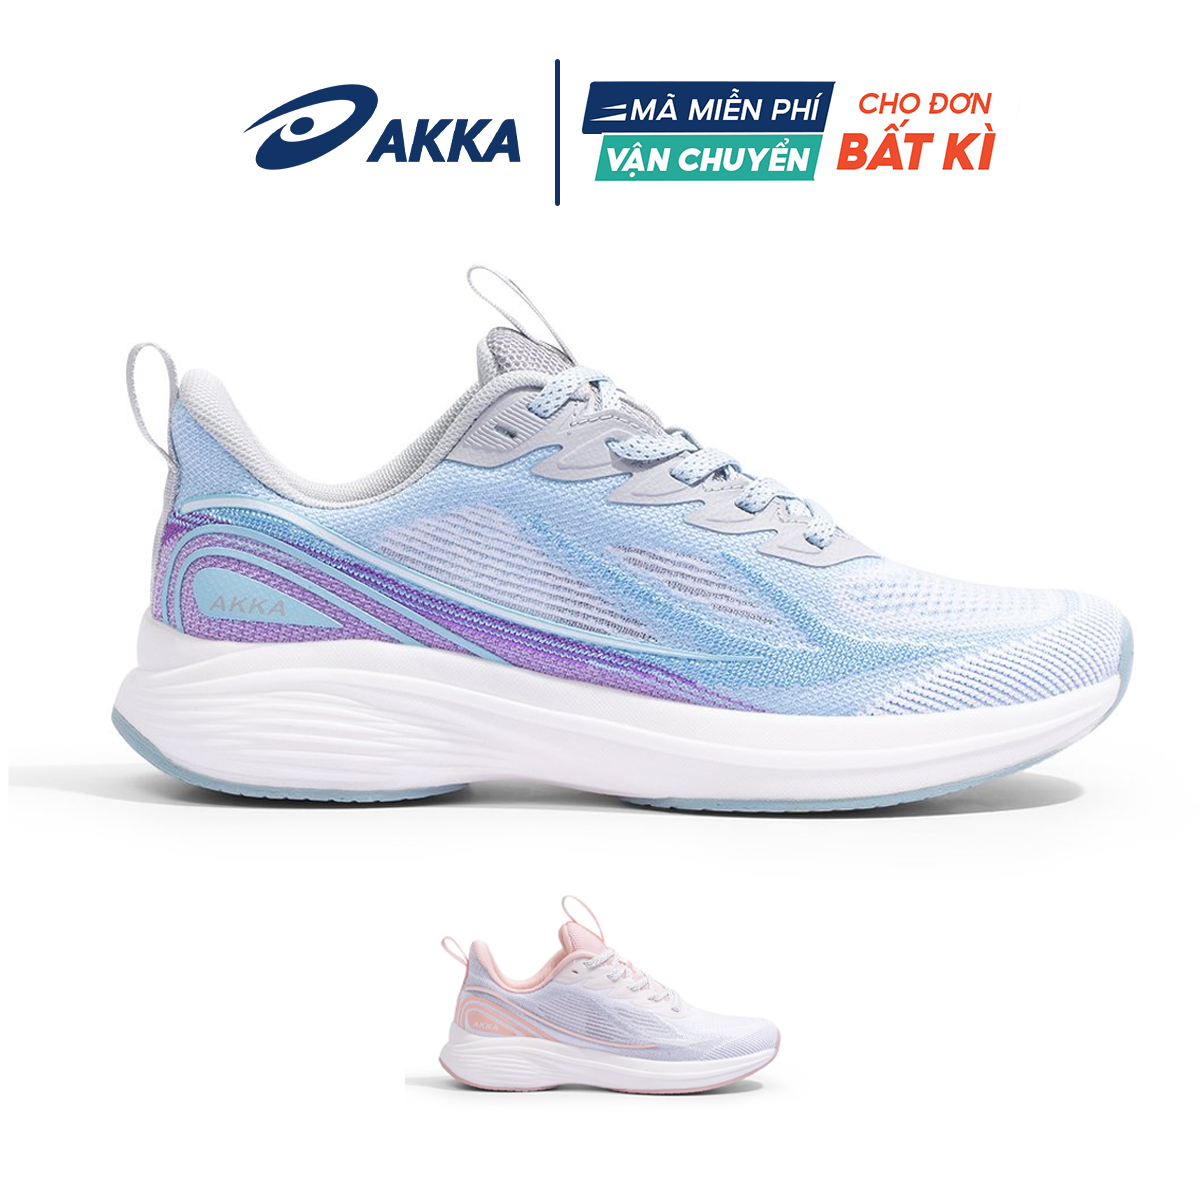 Giày thể thao chạy bộ nữ chính hãng AKKA ACTIVE B2221